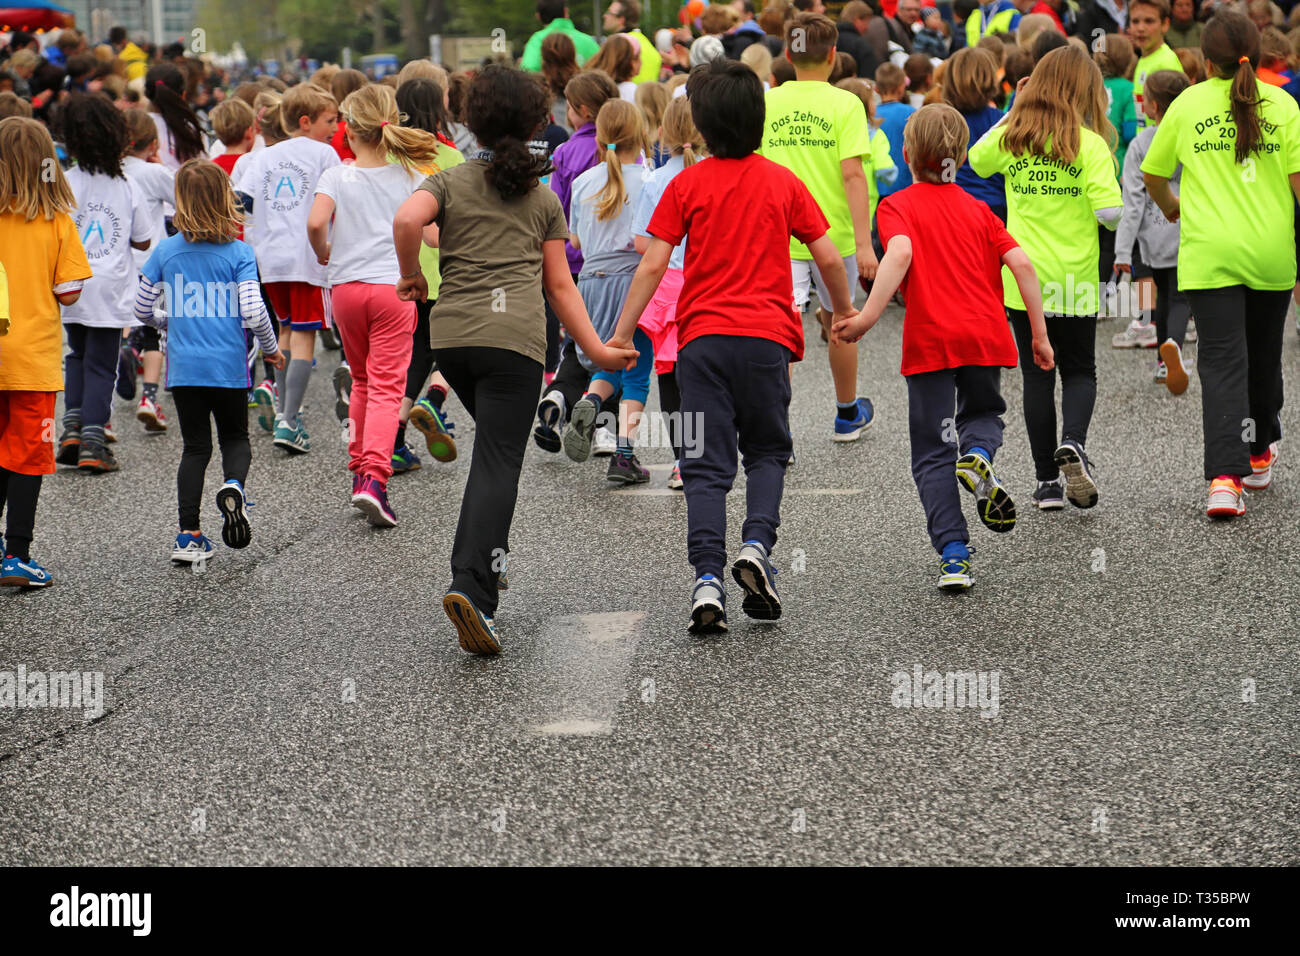 children running event in Hamburg Stock Photo